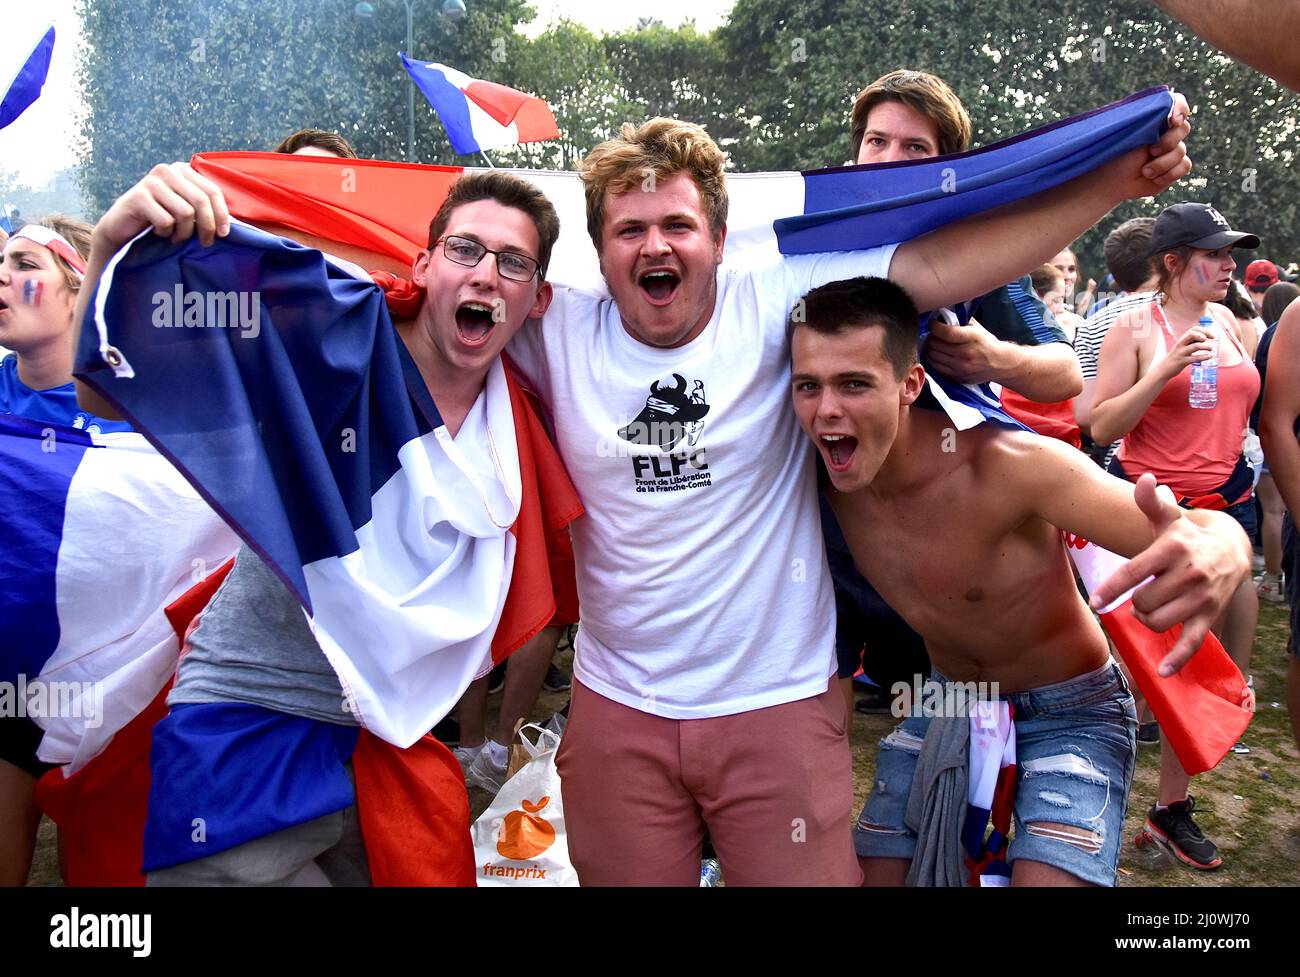 PARIS, FRANCE - 15 JUILLET 2018 : ambiance de fan après la victoire de l'équipe française de football contre la Croatie, lors de la coupe du monde 2018. Banque D'Images